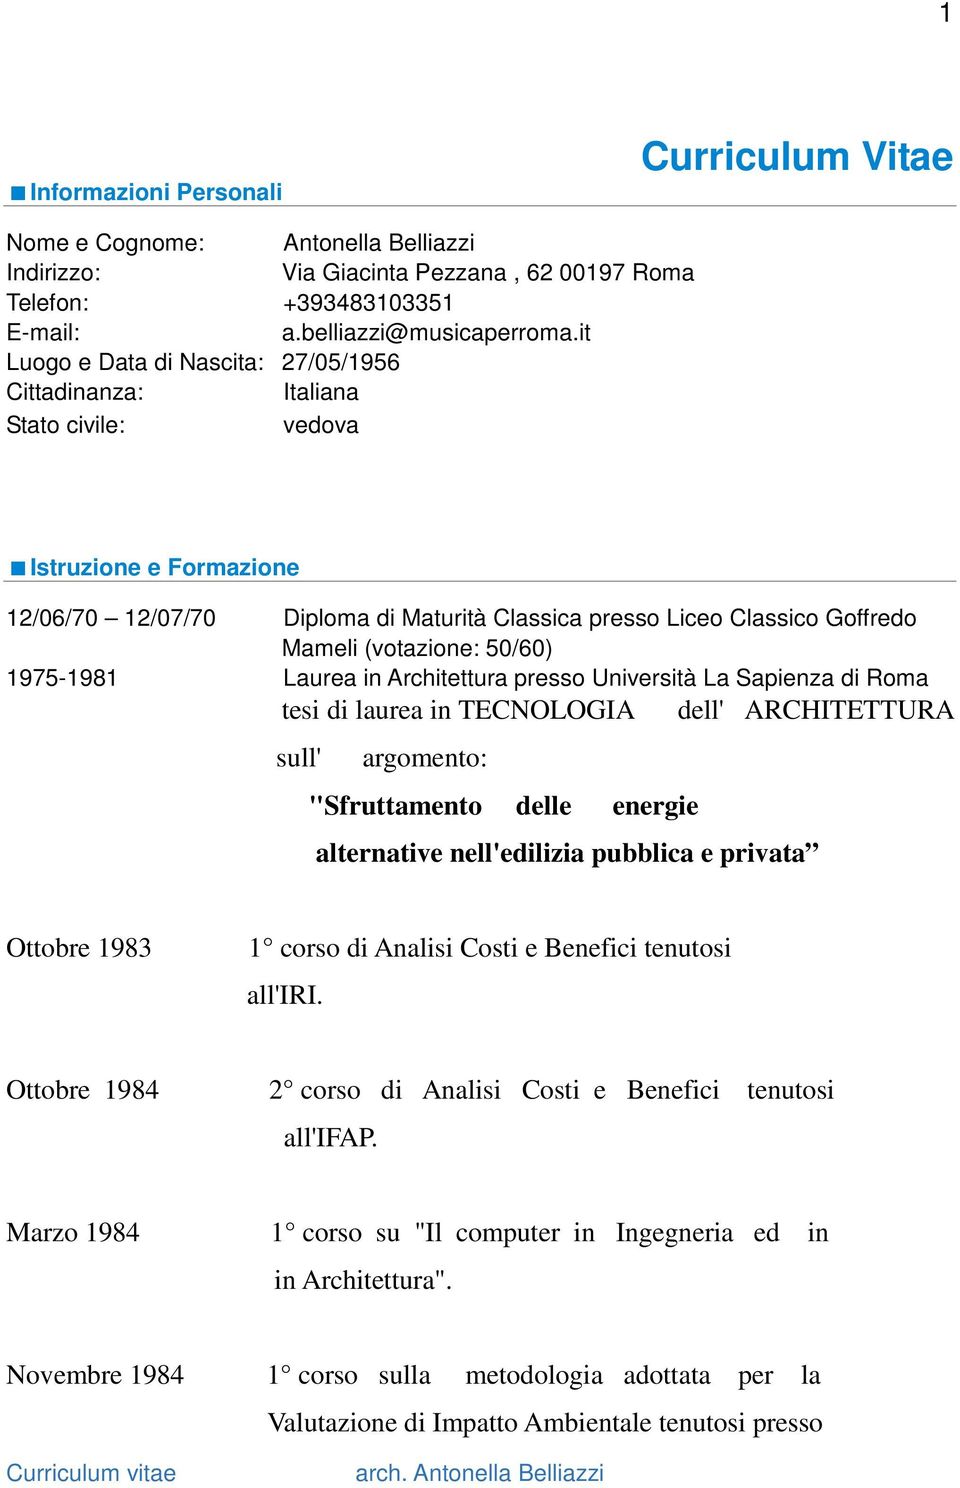 (votazione: 50/60) 1975-1981 Laurea in Architettura presso Università La Sapienza di Roma tesi di laurea in TECNOLOGIA dell' ARCHITETTURA sull' argomento: "Sfruttamento delle energie alternative